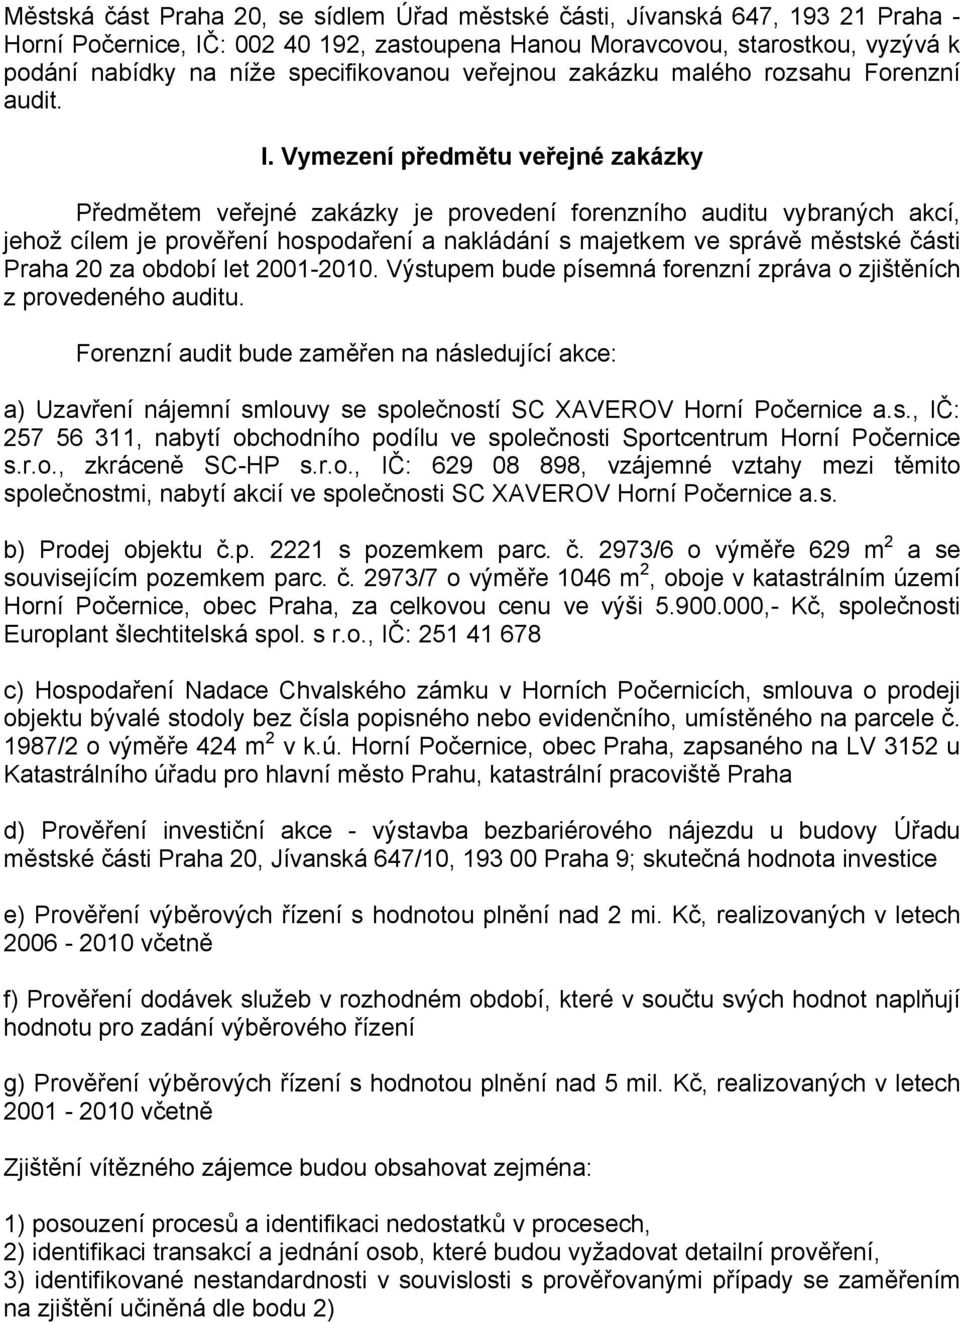 Vymezení předmětu veřejné zakázky Předmětem veřejné zakázky je provedení forenzního auditu vybraných akcí, jehož cílem je prověření hospodaření a nakládání s majetkem ve správě městské části Praha 20